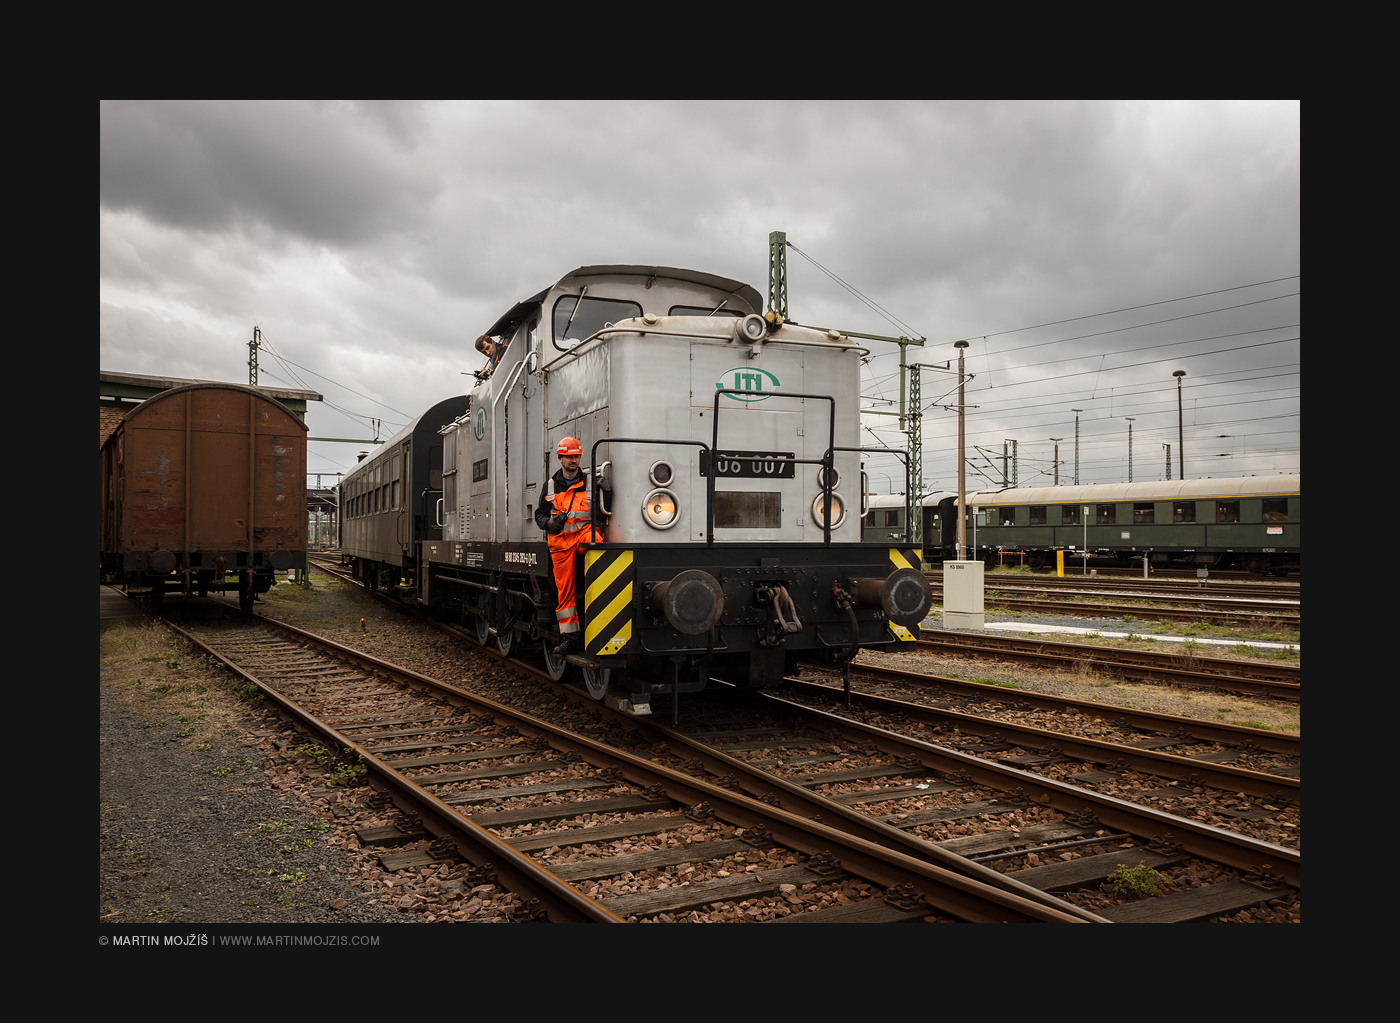 Muzejní lokomotiva 06 007 při posunu.